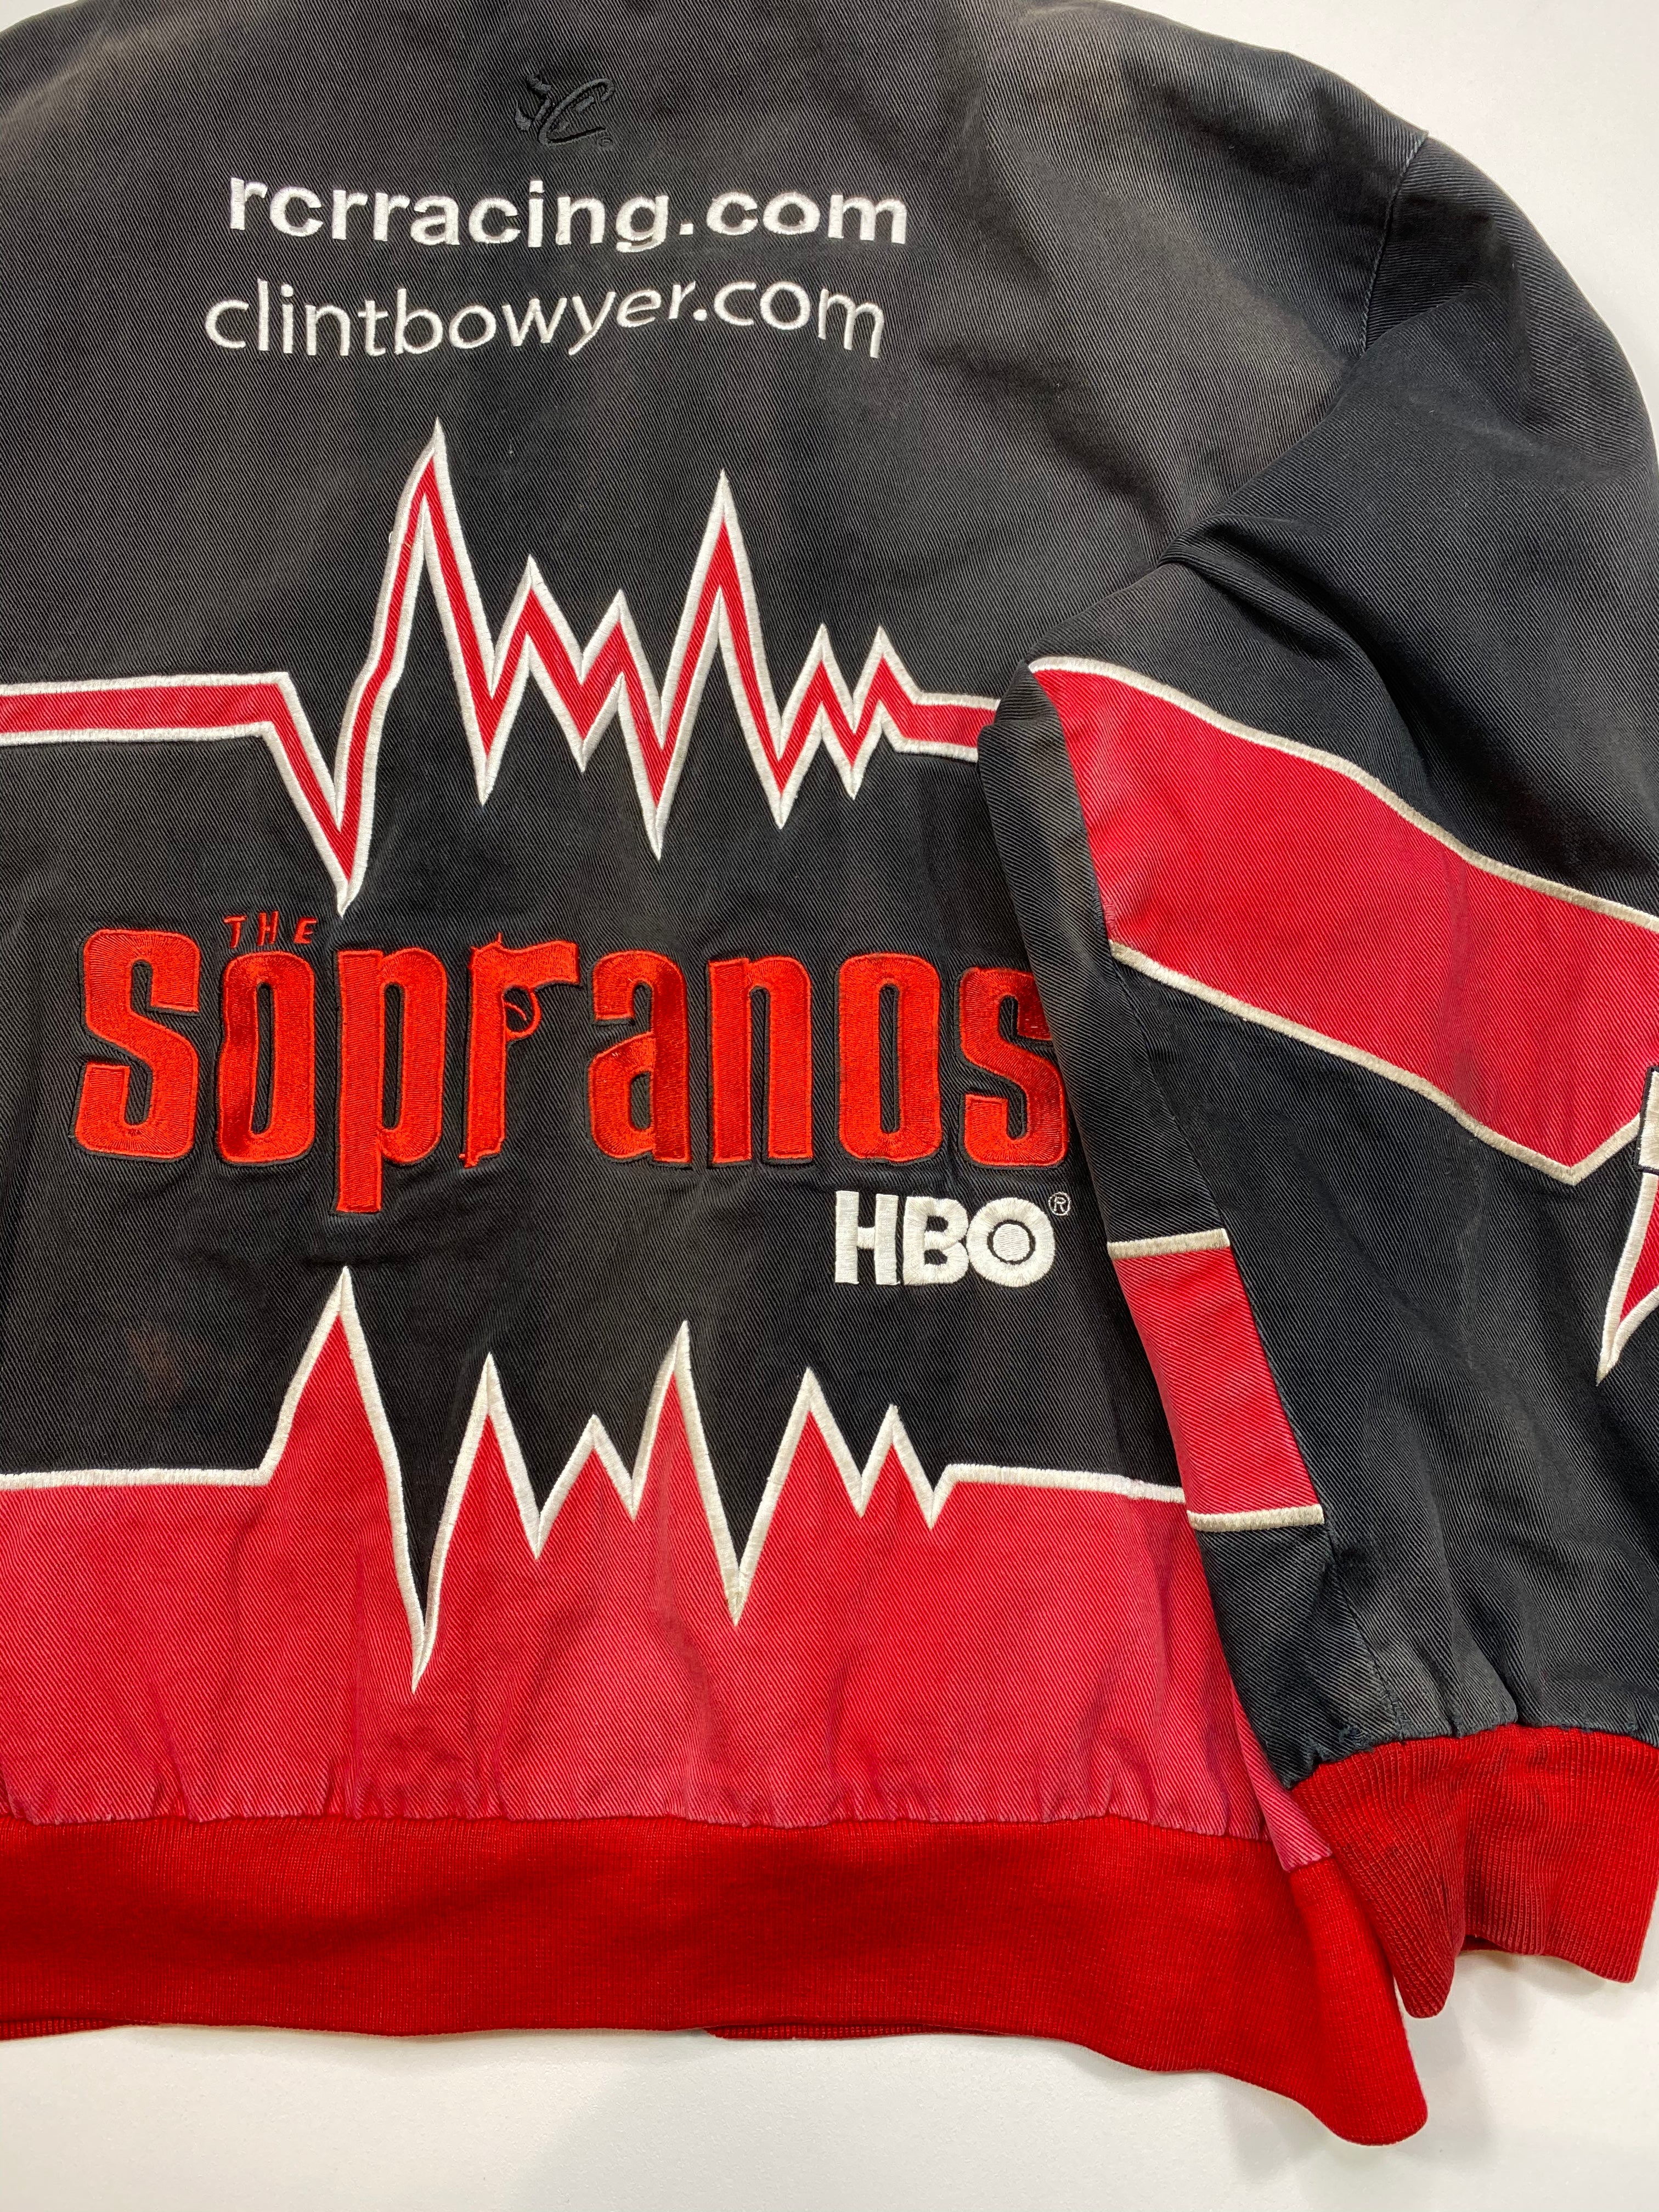 The Sopranos black \u0026 red stadium jacket◼︎Details